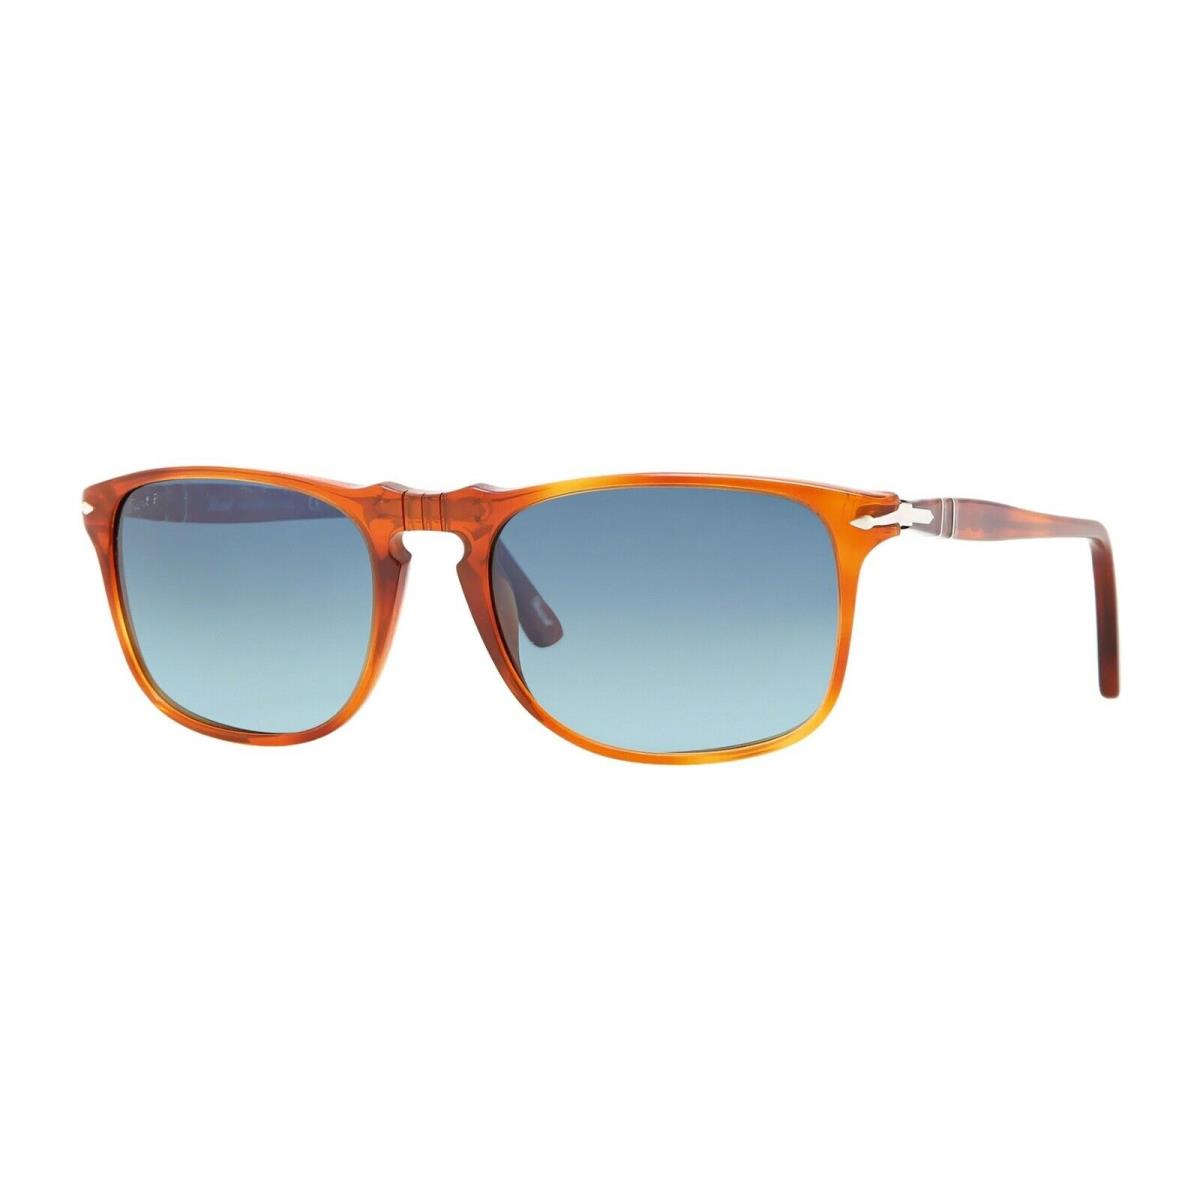 Persol PO 3059S Terra Di Siena/blue Shaded Polarized 96/S3 Sunglasses